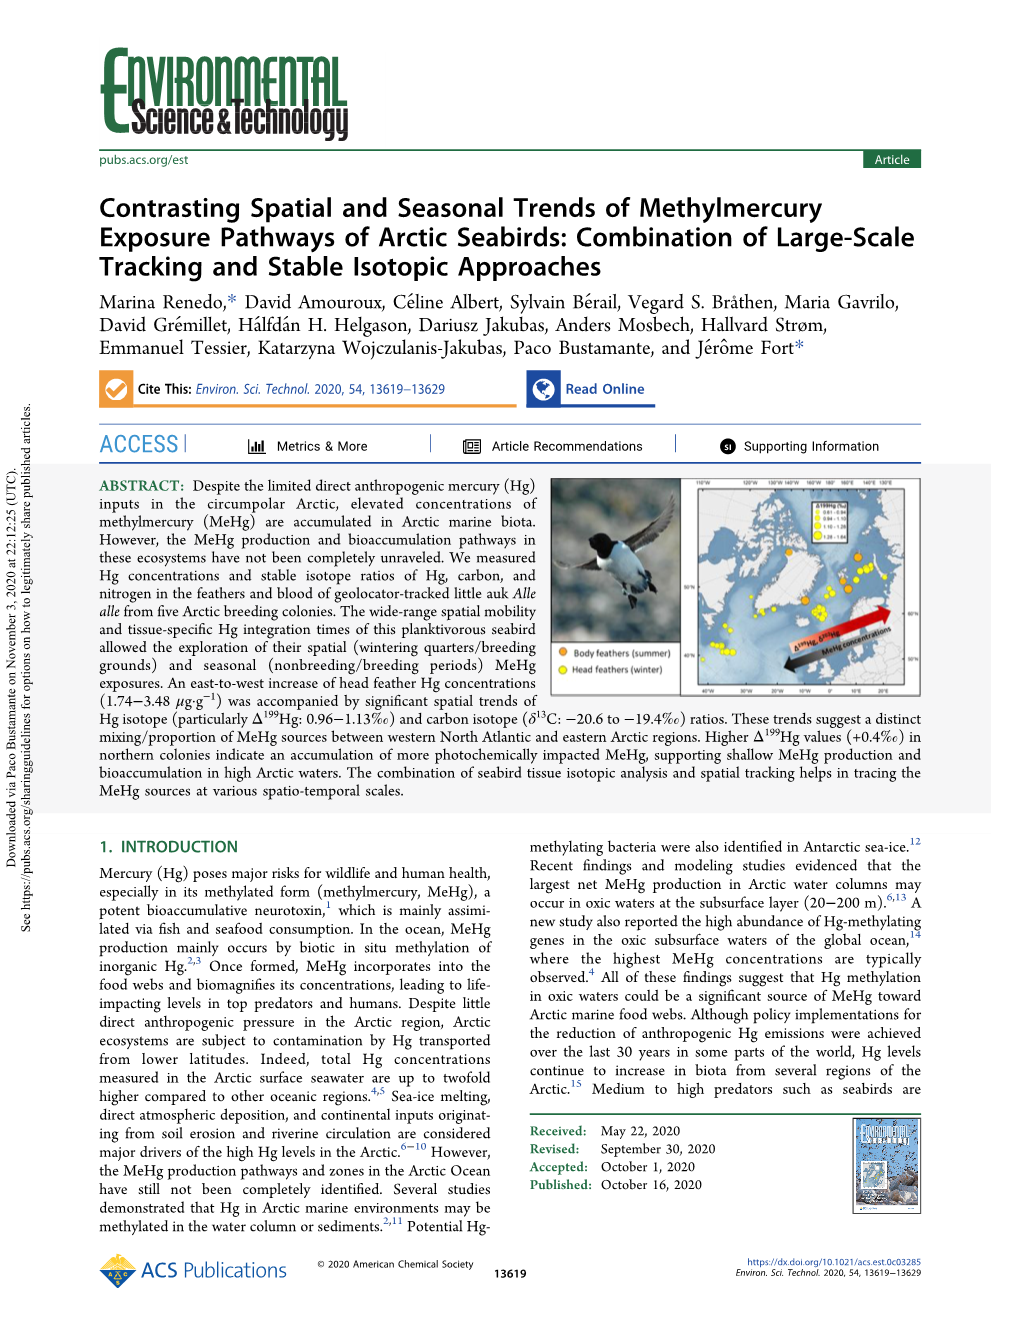 Contrasting Spatial and Seasonal Trends of Methylmercury Exposure